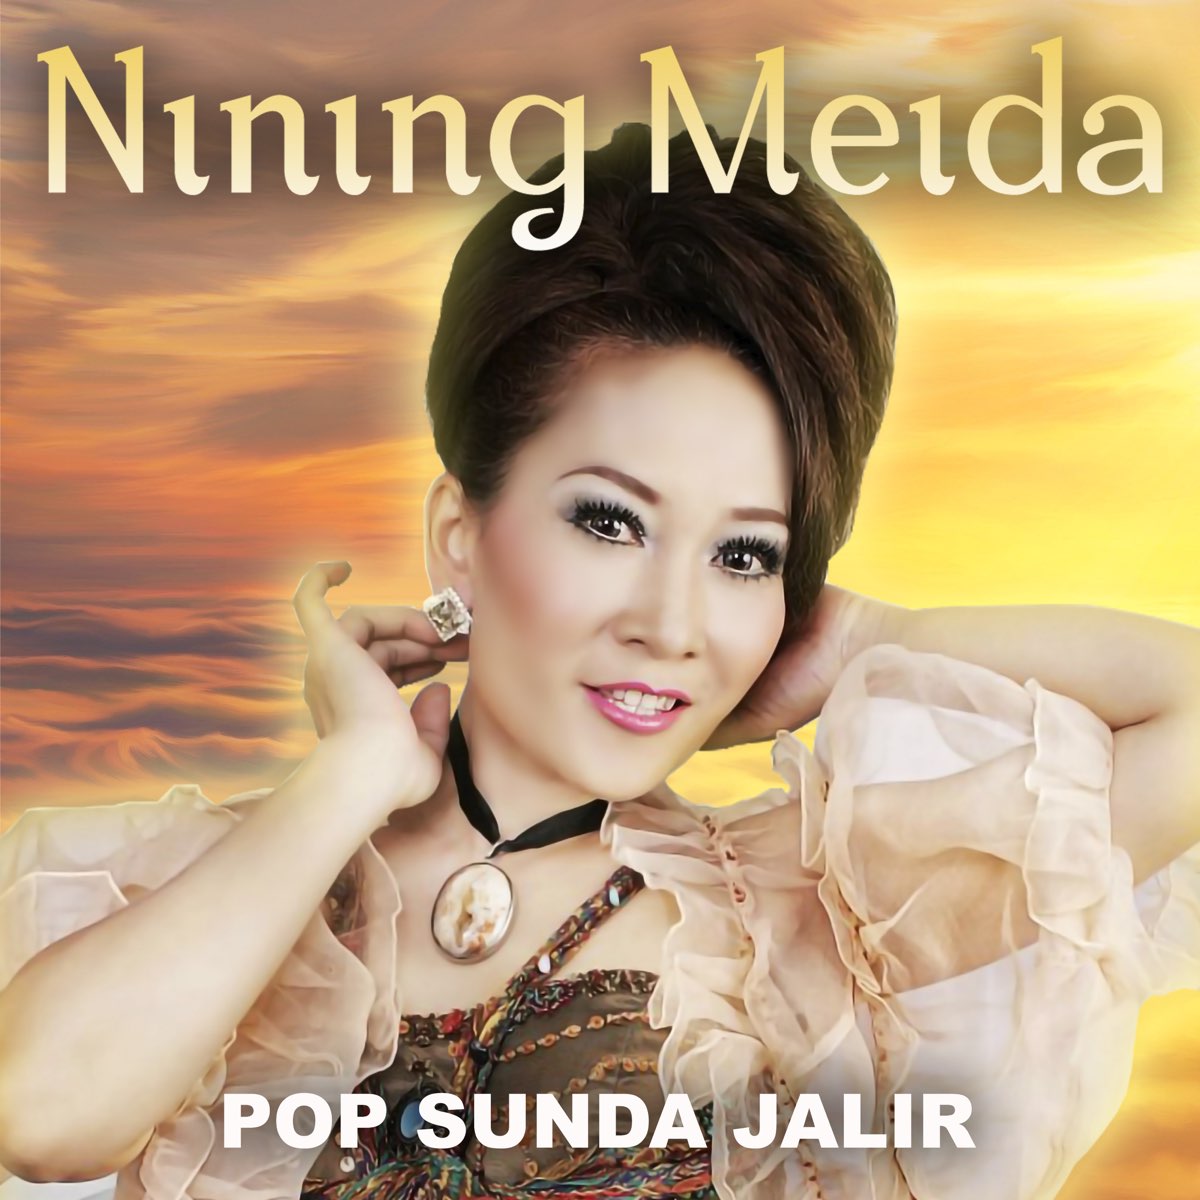 Chord Sunda Nining Maida / Chord Sunda Nining Maida Lagu